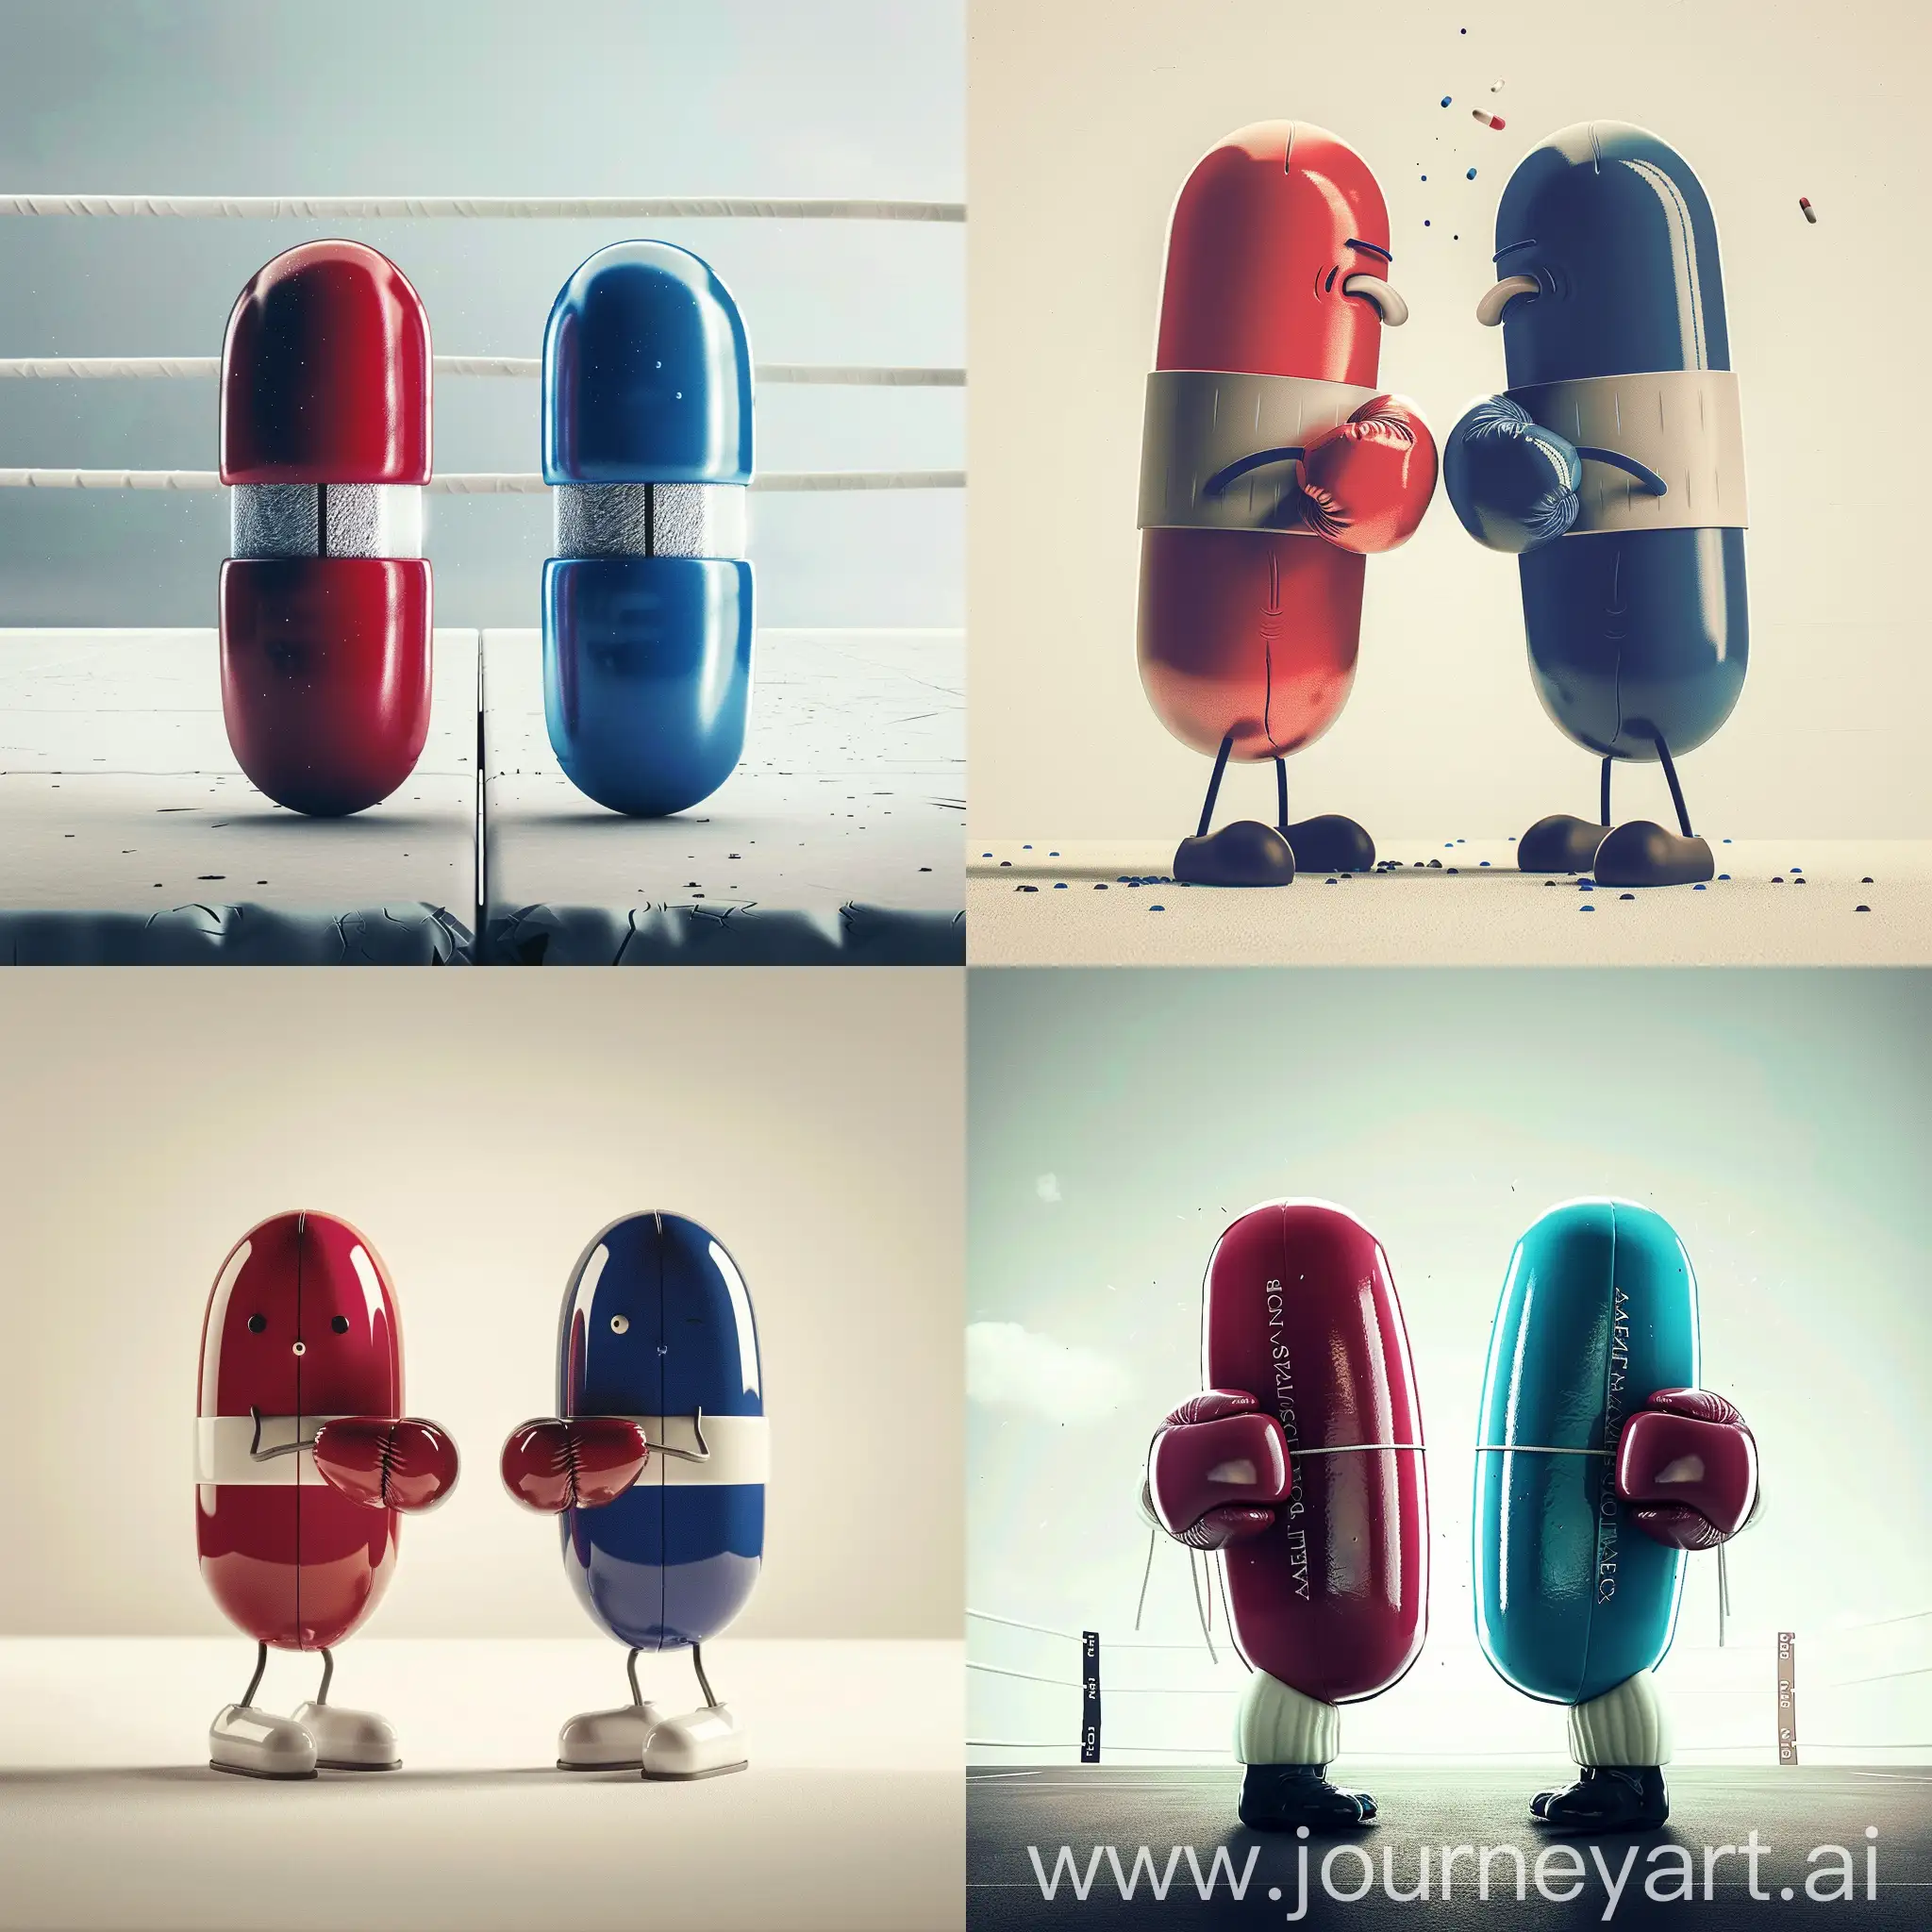 Crée une affiche avec deux pillule, une rouge, et une bleu, qui sont habillée en boxeur, et qui s'affrontent avec un fond blanc sans ring